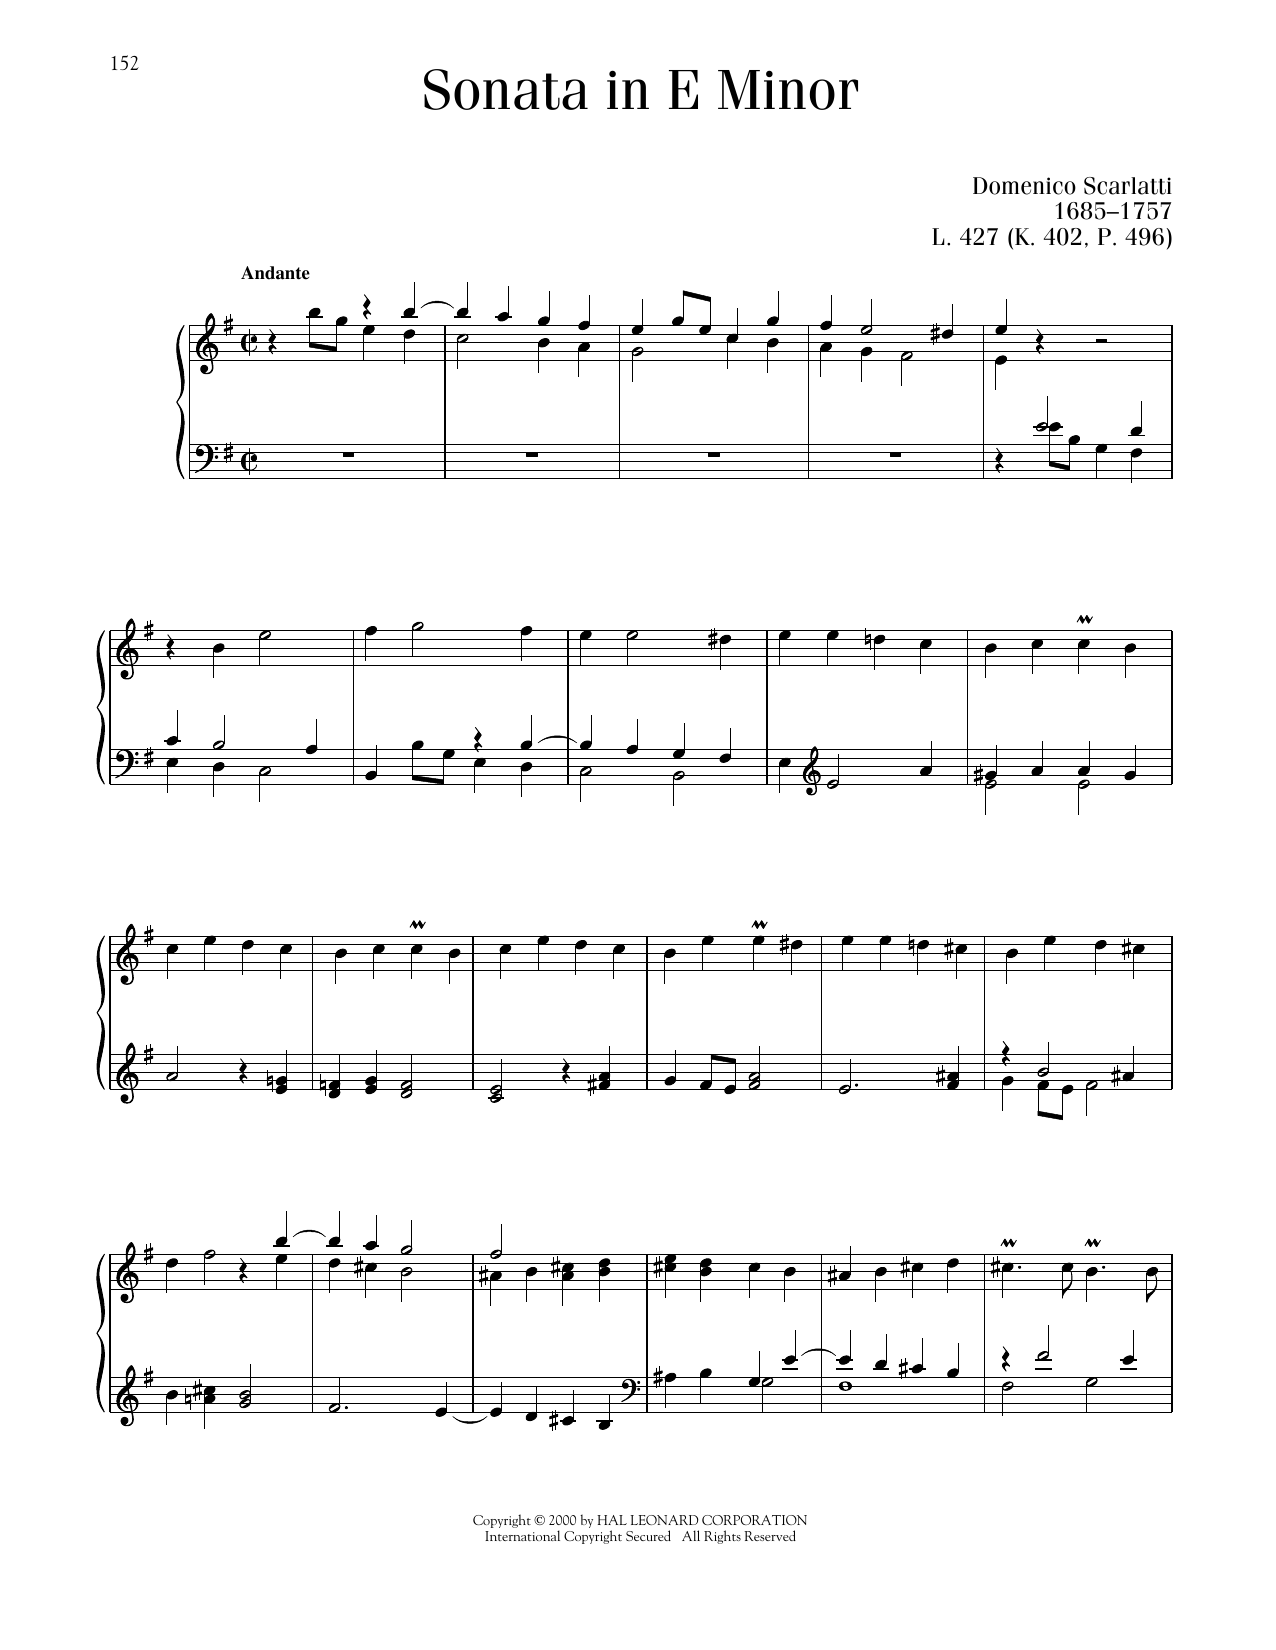 Domenico Scarlatti Sonata In E Minor, K. 402 sheet music notes printable PDF score